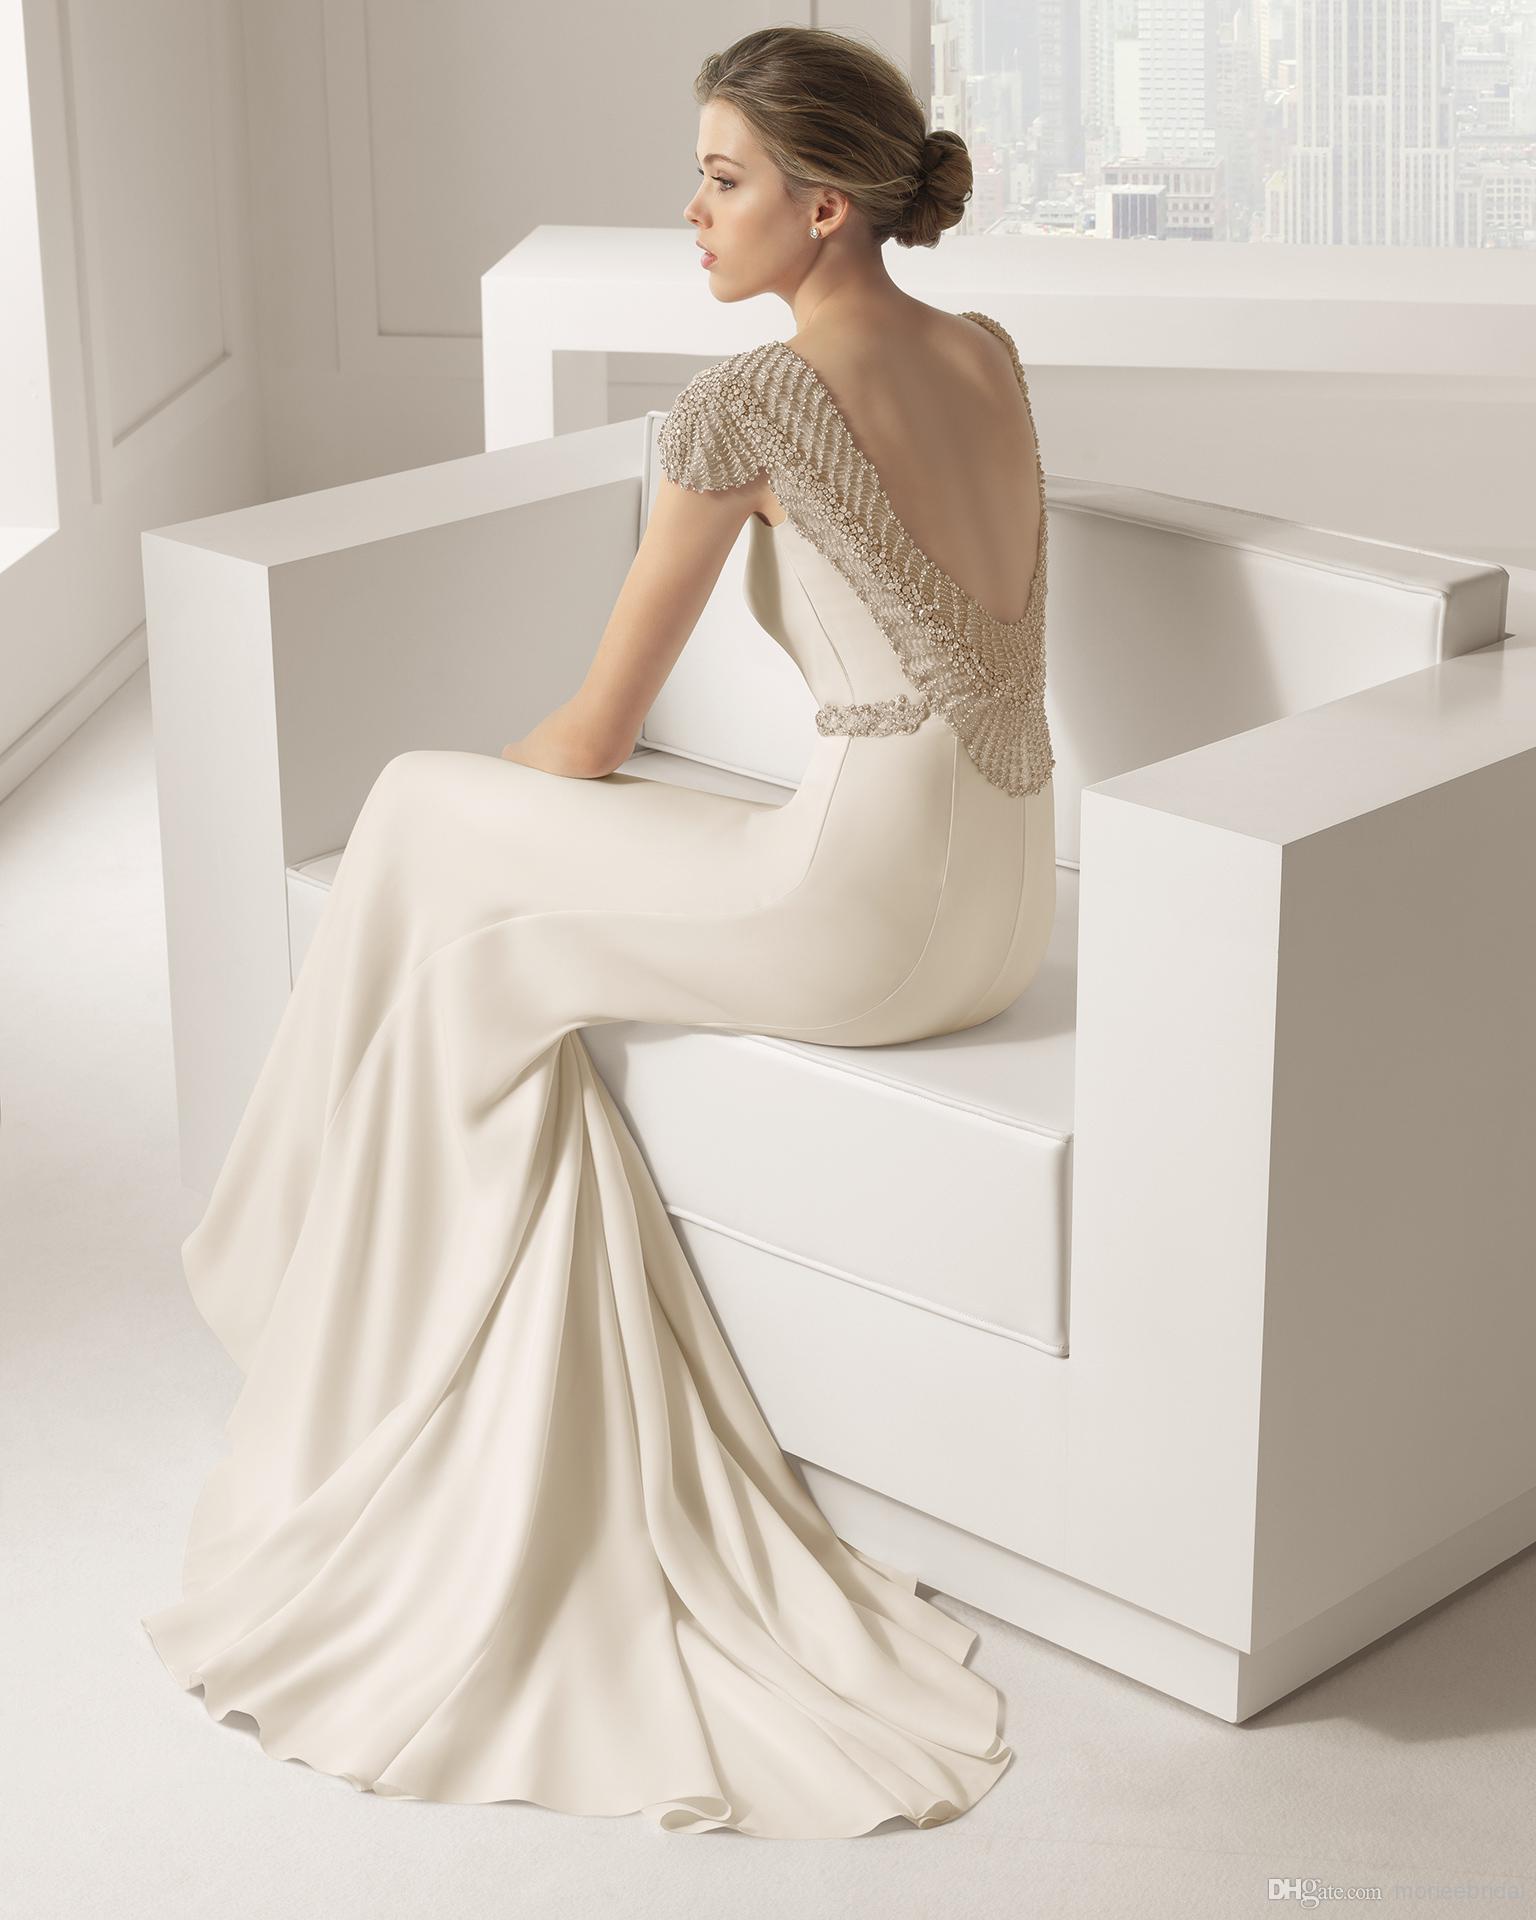 Elie Saab sheath wedding gown